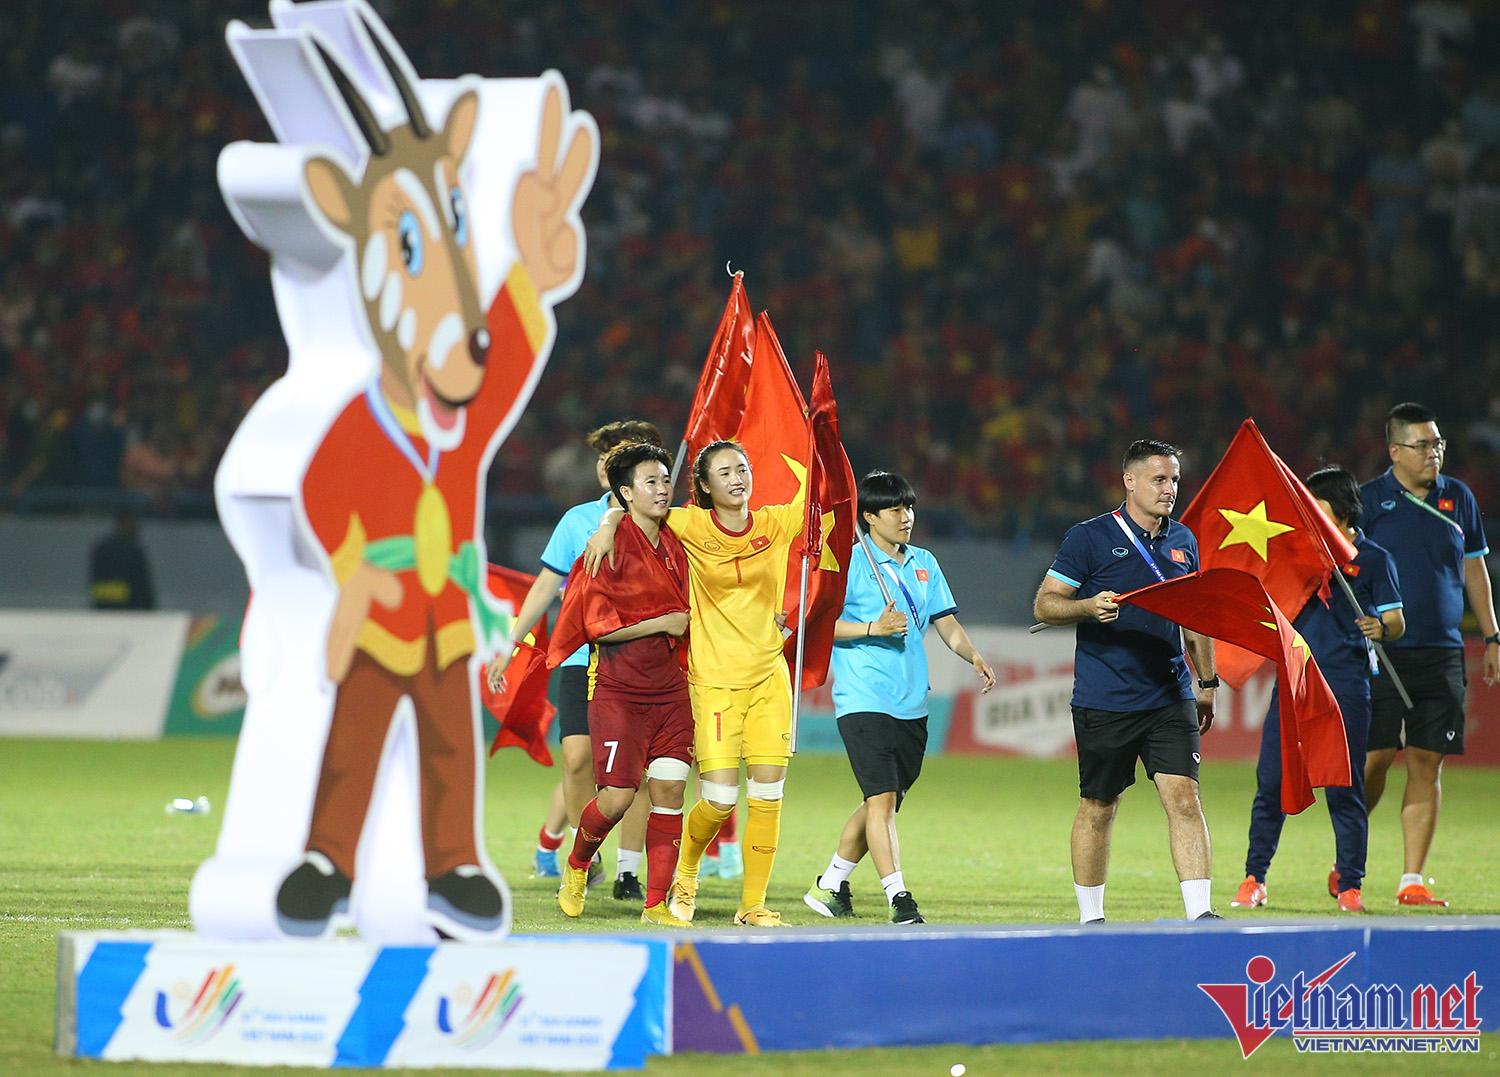 Xúc động hình ảnh cầu thủ nữ Việt Nam cắm cờ Tổ quốc trên bục nhận huy chương - Ảnh 7.